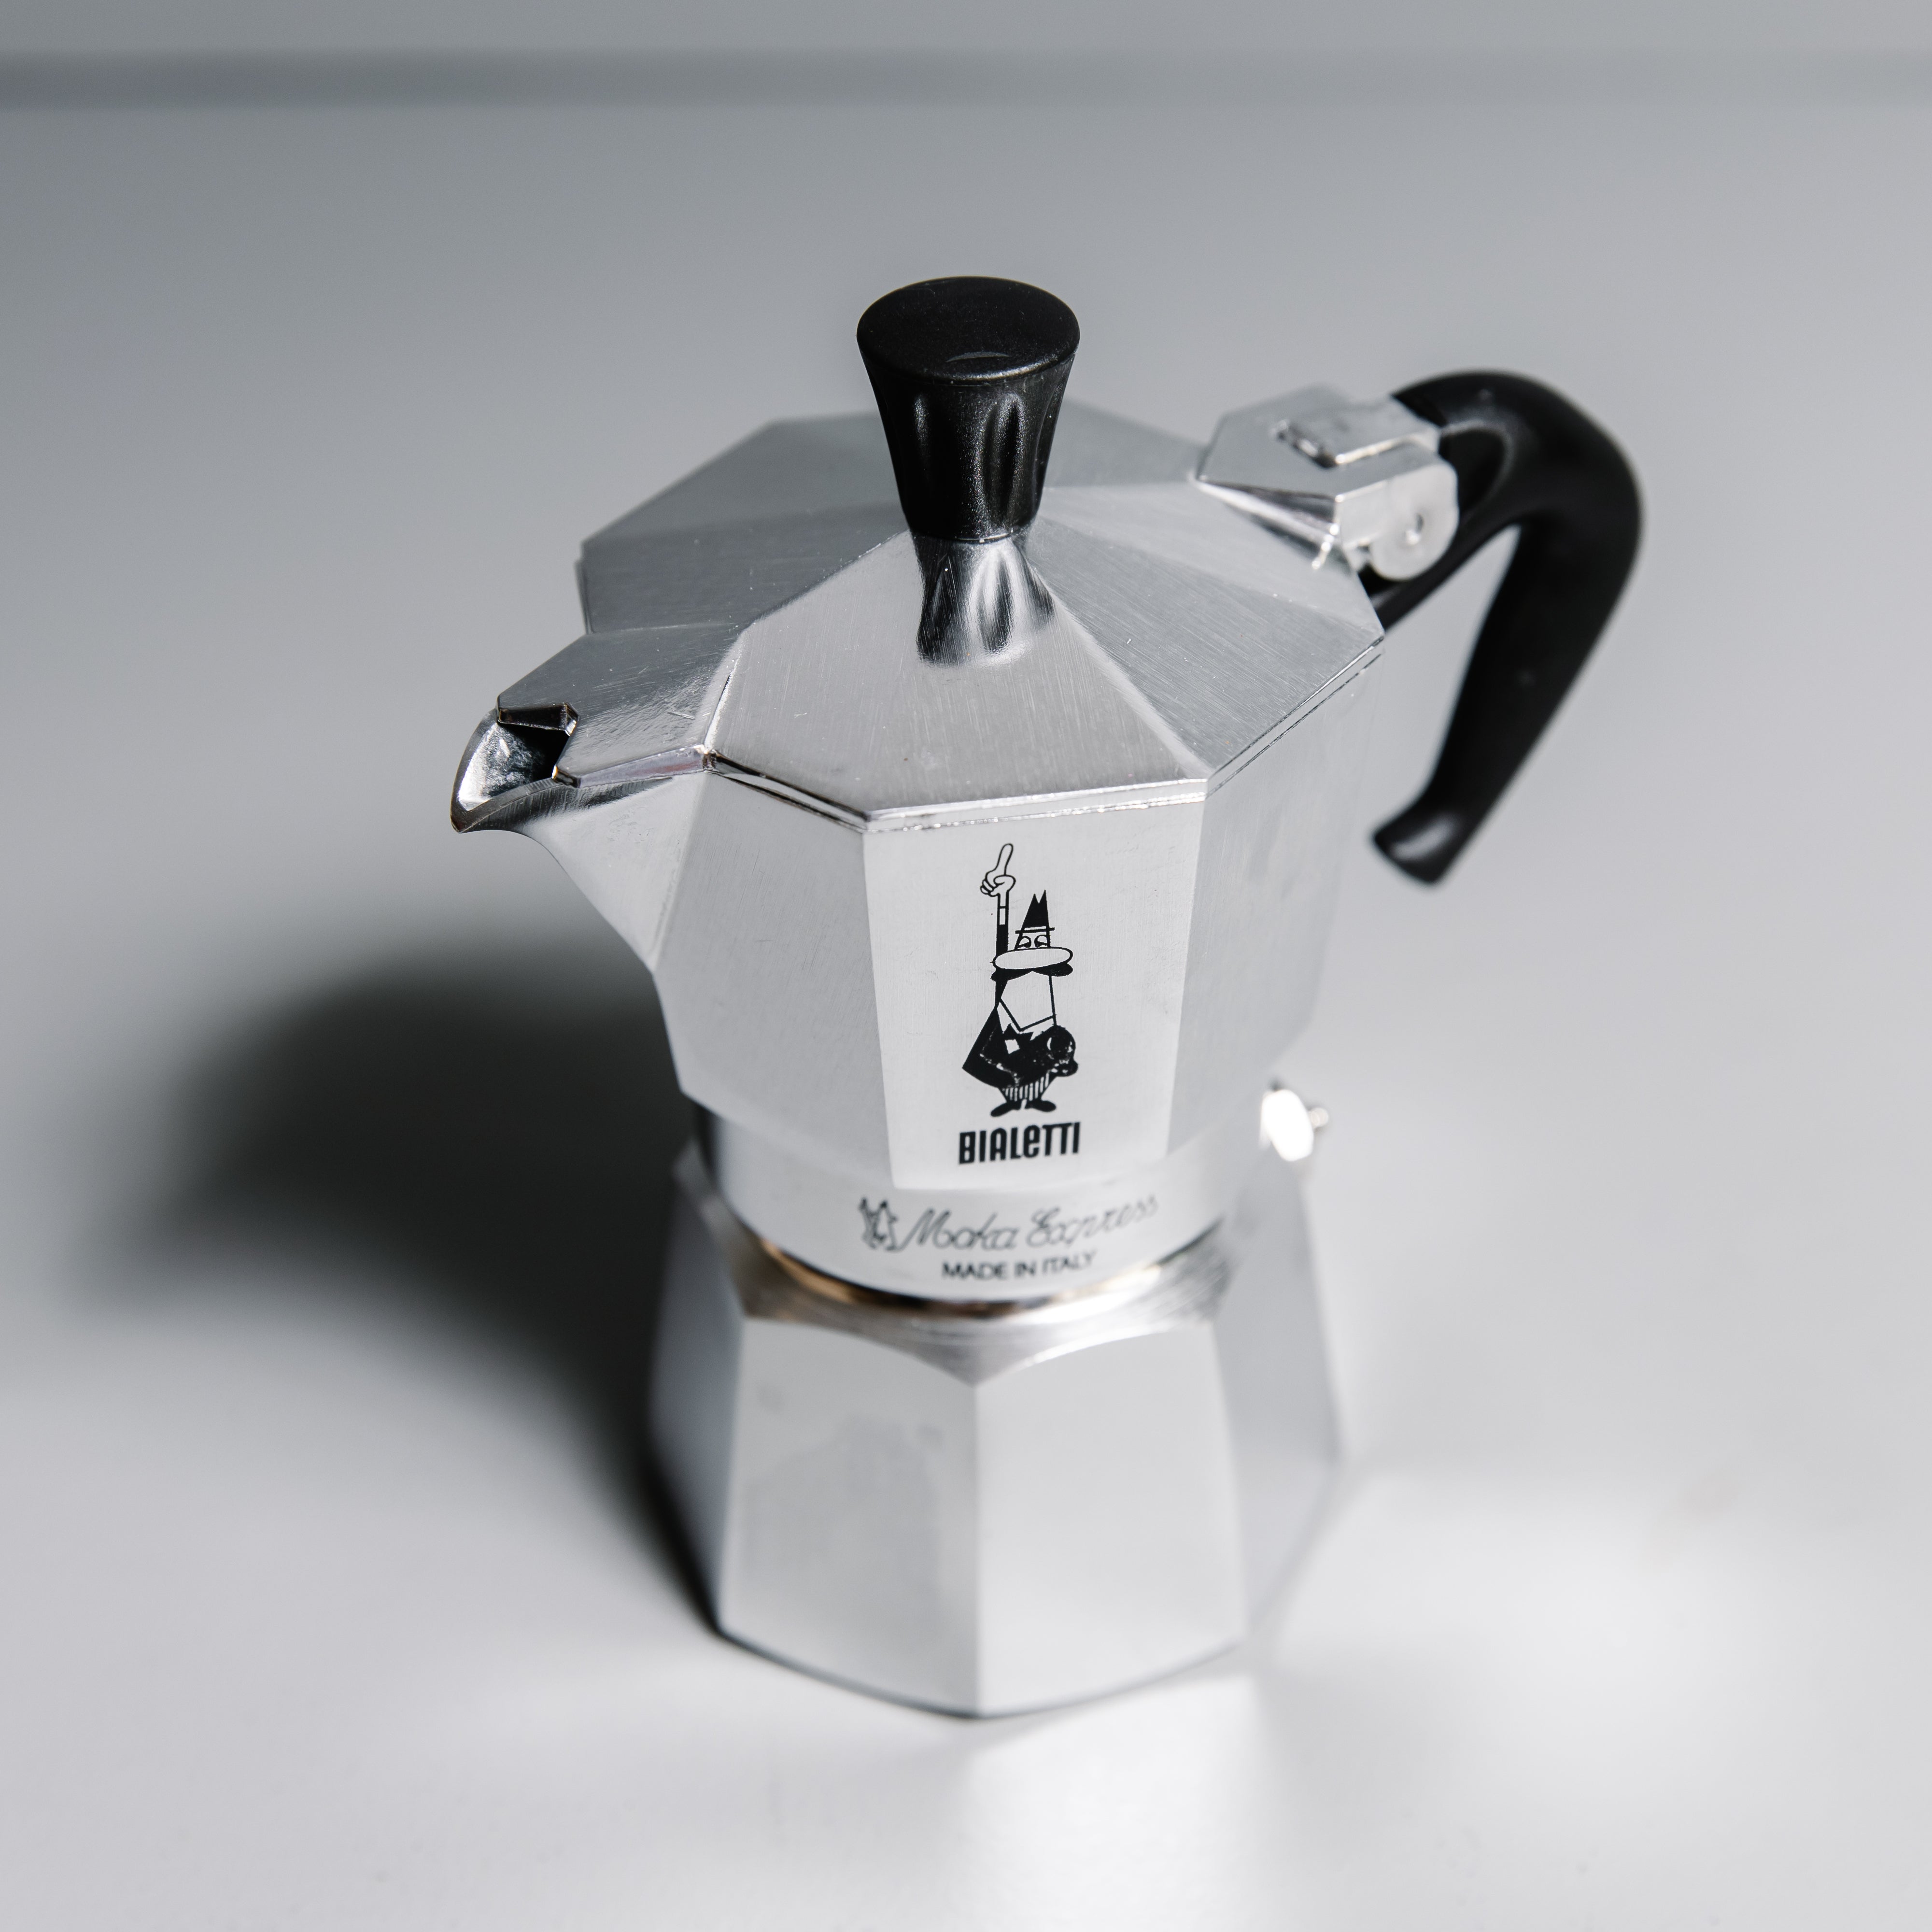 NEW 2 CUP BIALETTI MOKA Espresso Coffee Maker Percolator